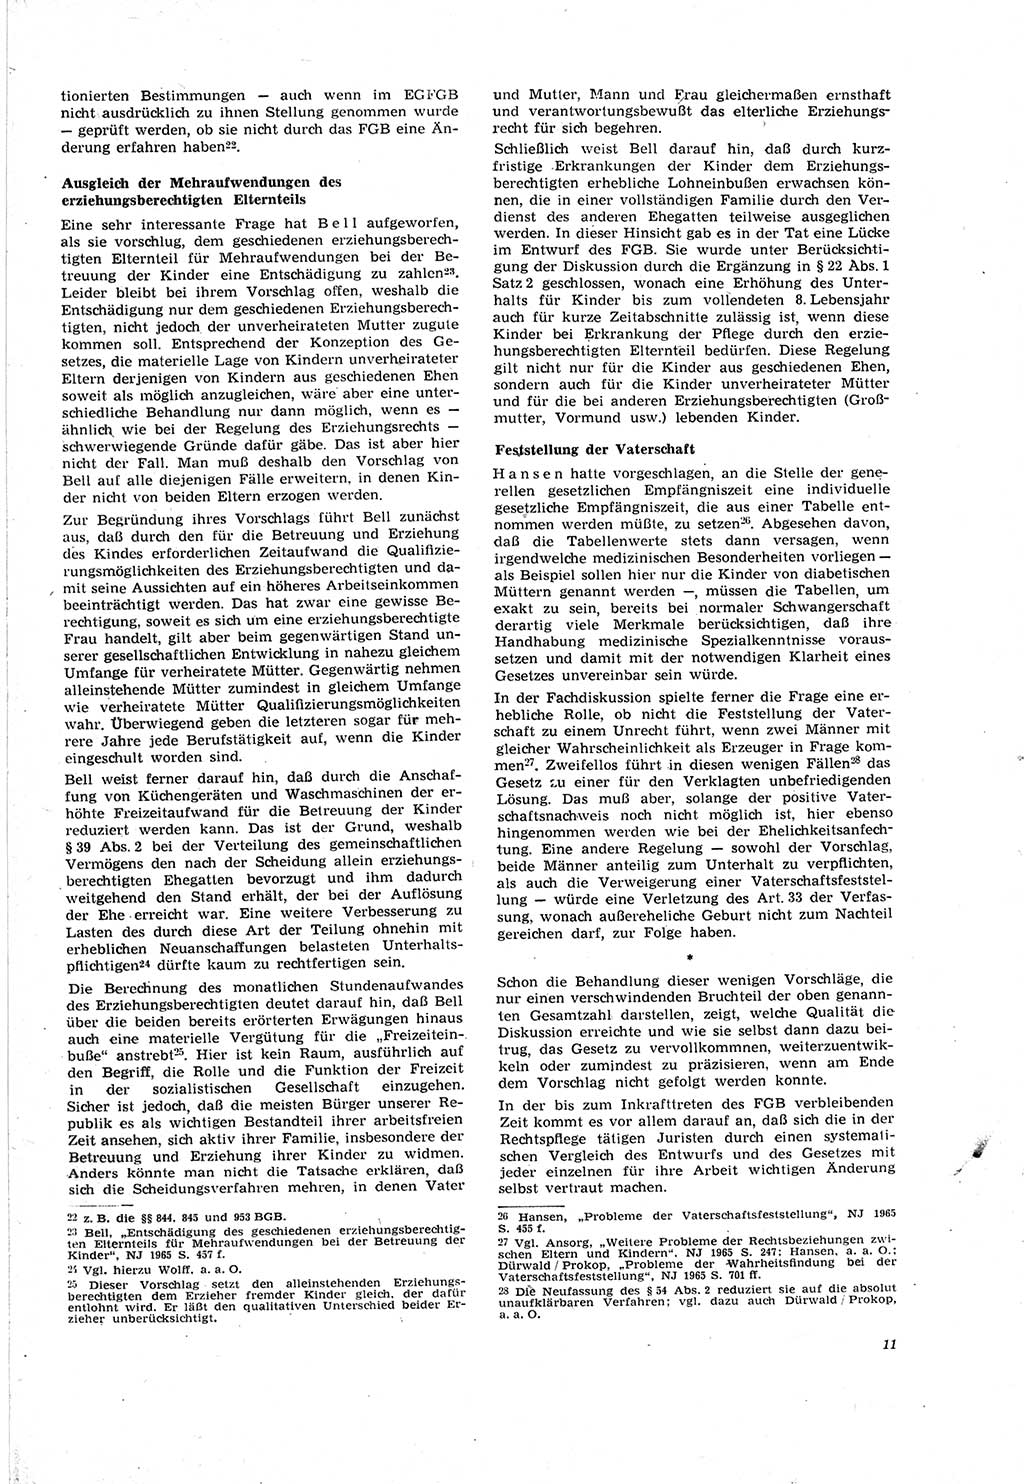 Neue Justiz (NJ), Zeitschrift für Recht und Rechtswissenschaft [Deutsche Demokratische Republik (DDR)], 20. Jahrgang 1966, Seite 11 (NJ DDR 1966, S. 11)